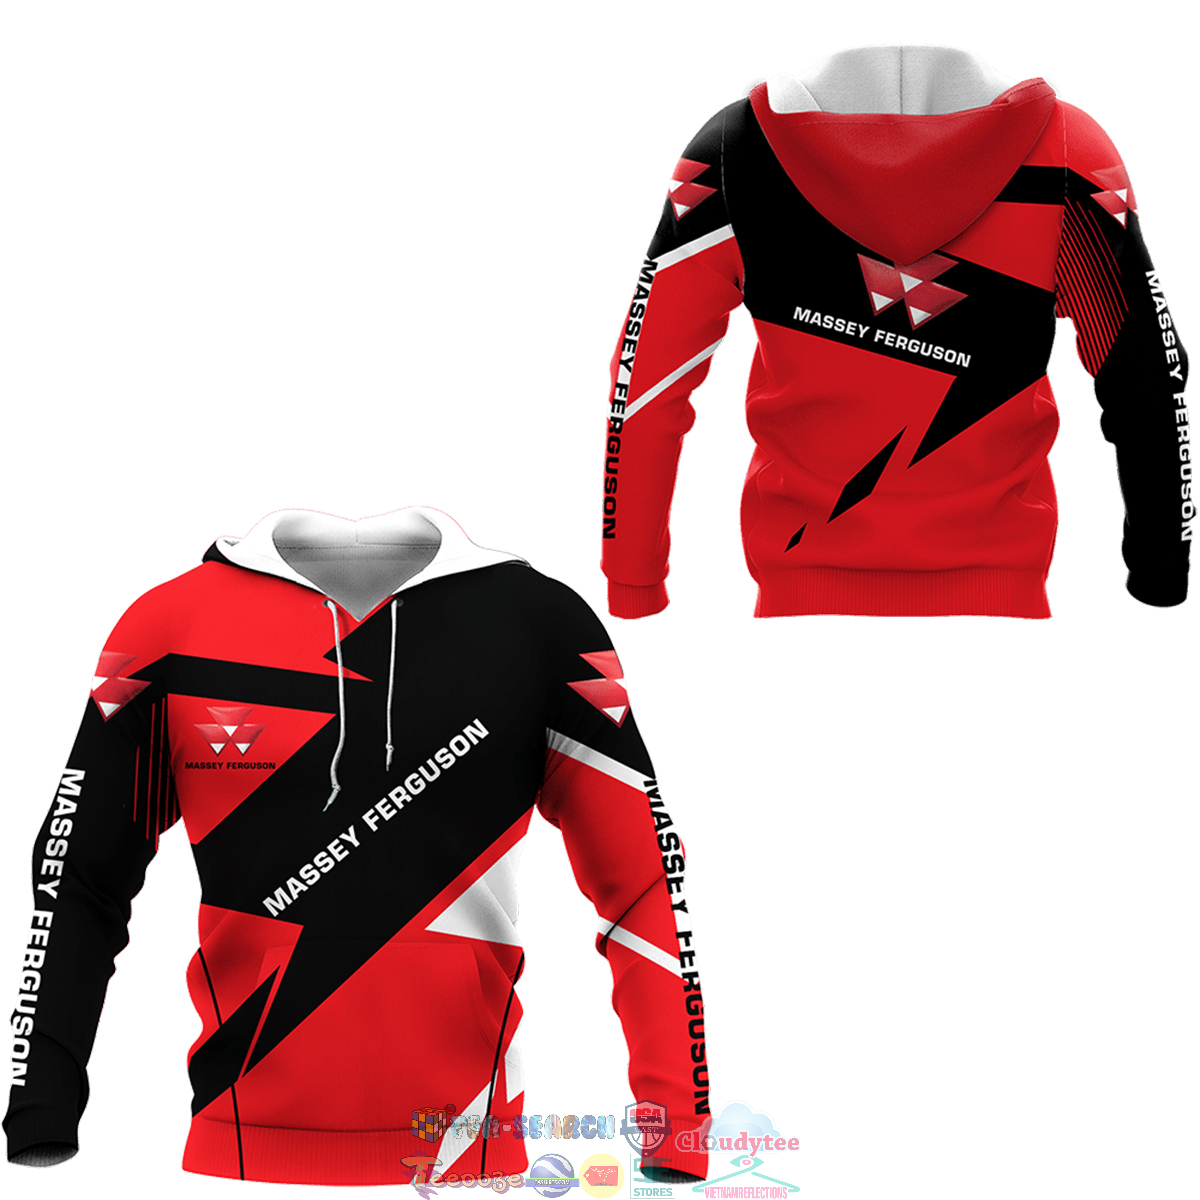 Massey Ferguson ver 7 3D hoodie and t-shirt – Saleoff